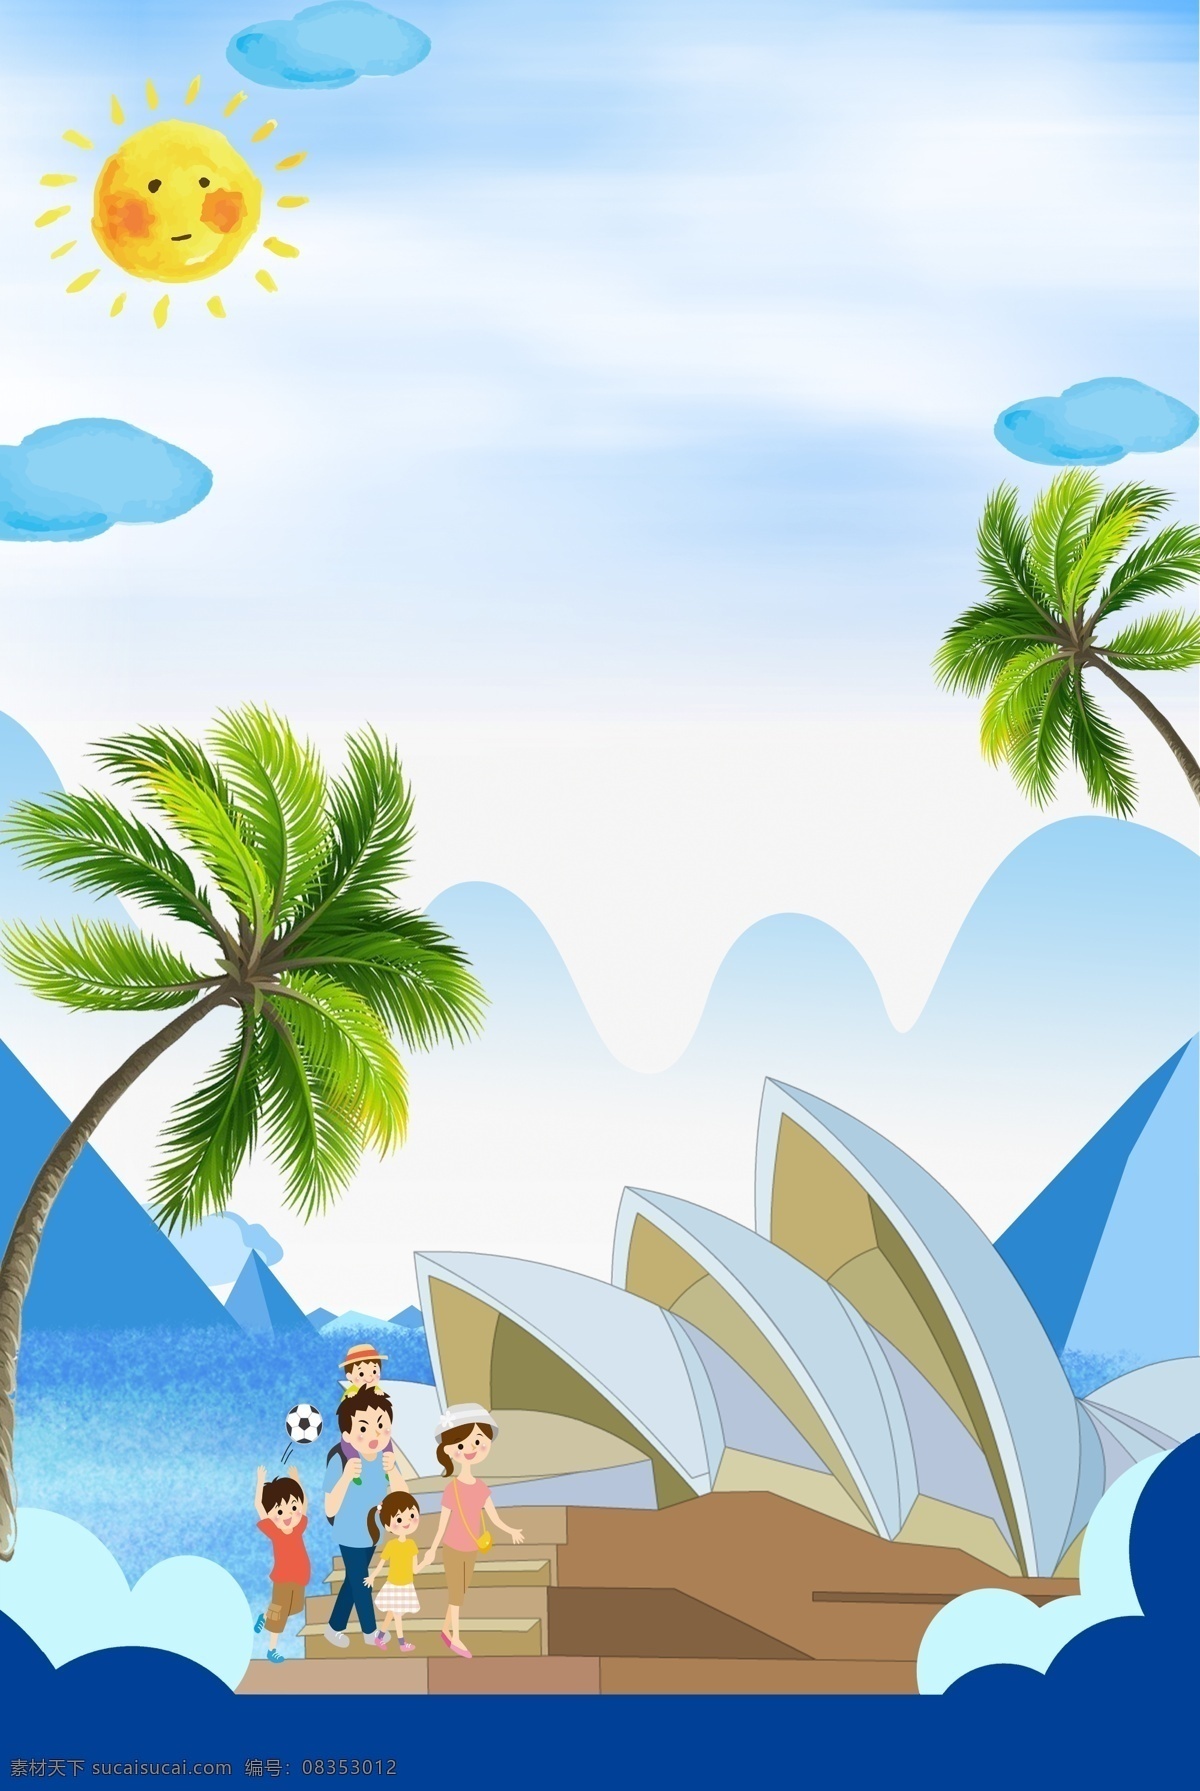 旅游出行 宣传海报 旅游 宣传 促销 打折 出行 出游 旅行 游玩 悉尼歌剧院 全家游 椰树 太阳